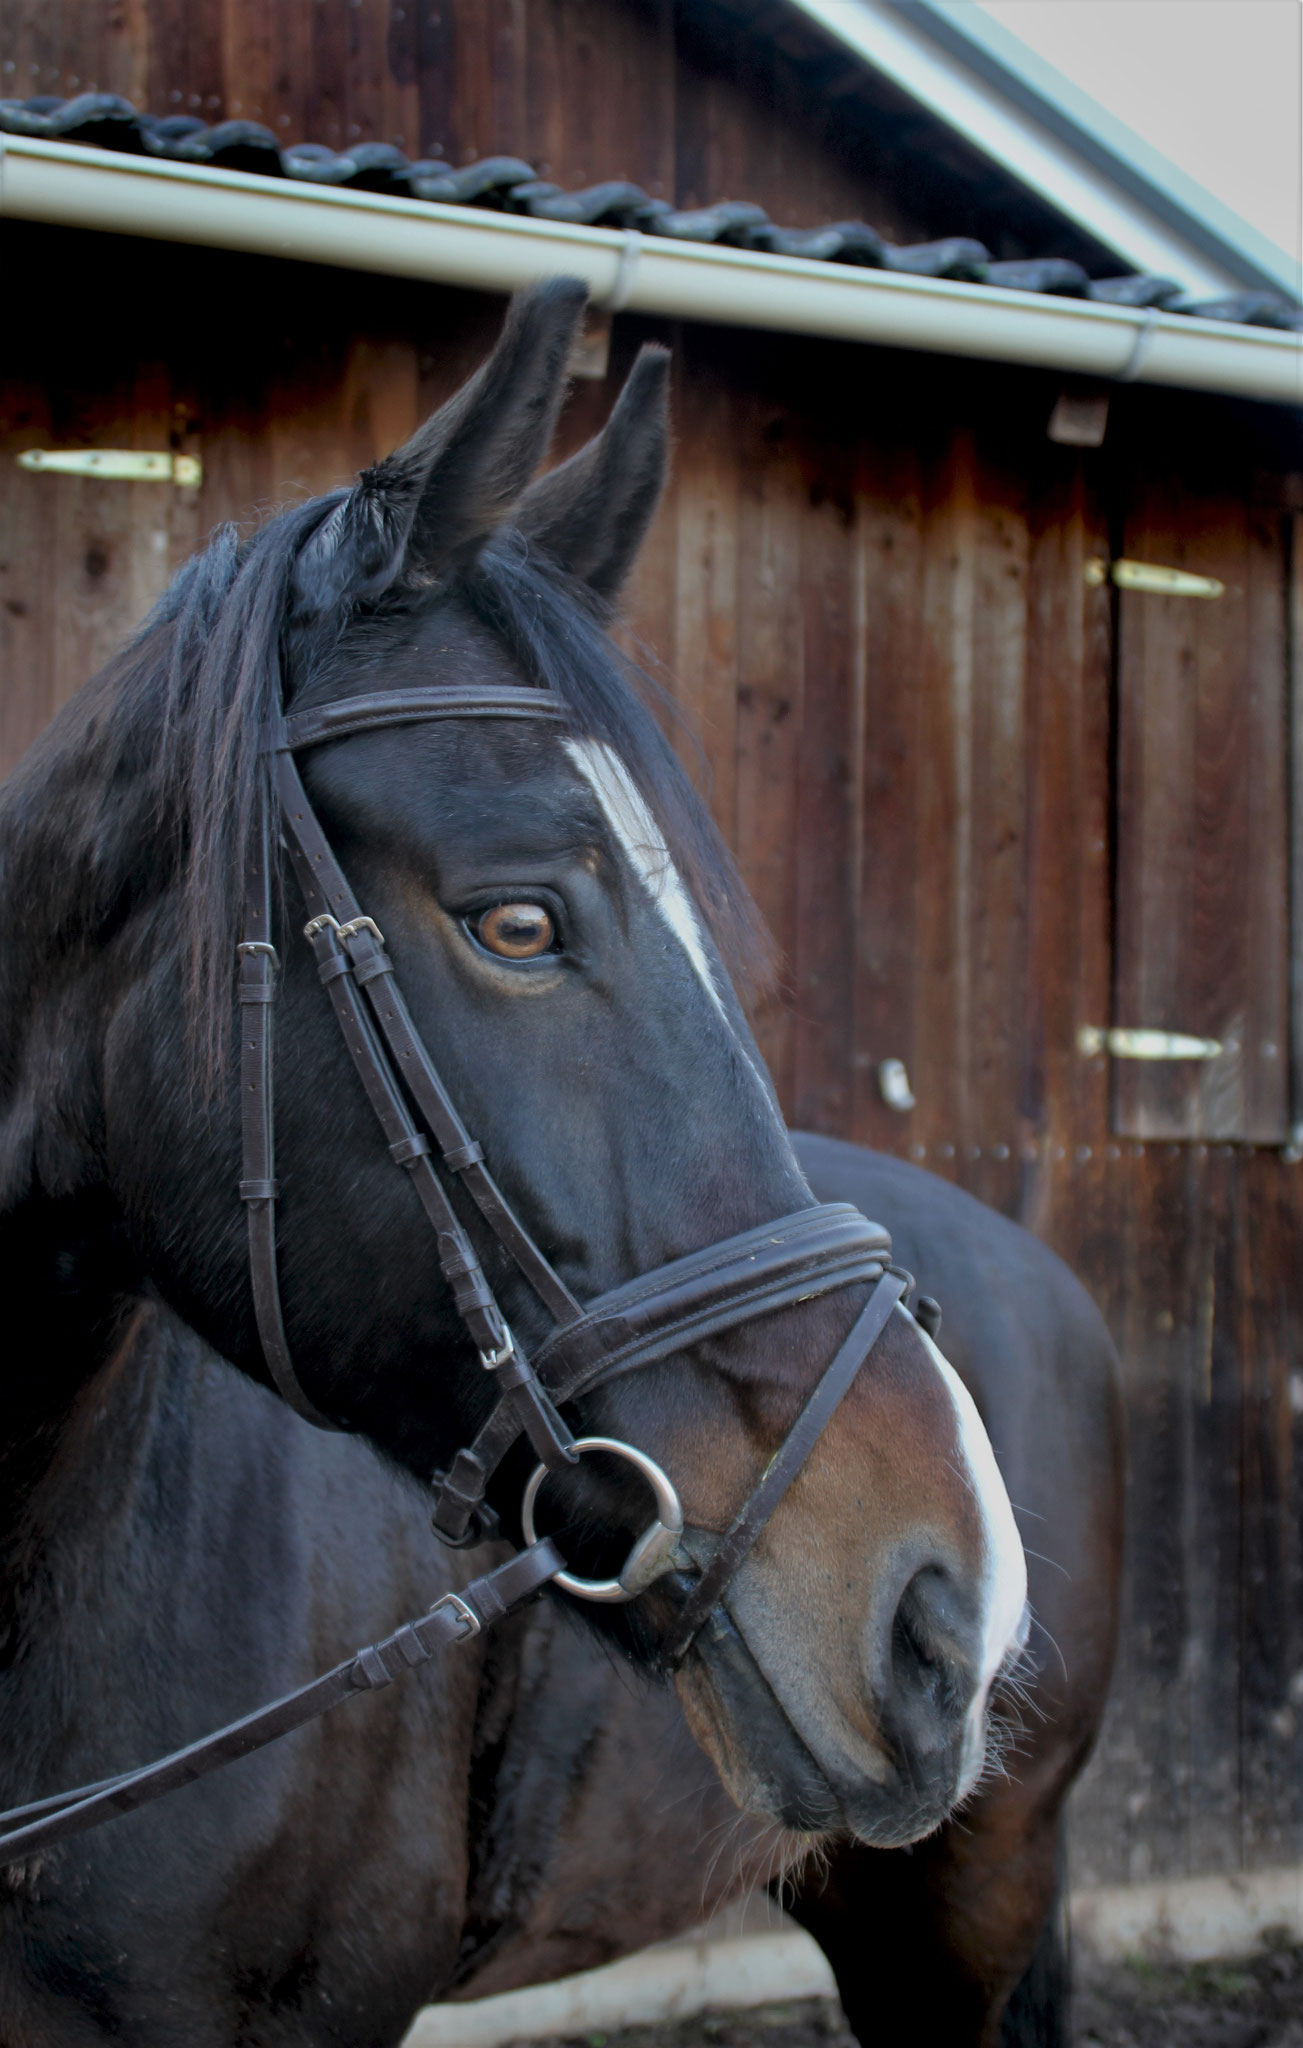 Ergon, geb. 2004, 166 cm. Ein Pferd mit Chefposten, der im Gelände sehr gemütlich ist und aussergewöhnlich tolle Augen hat.